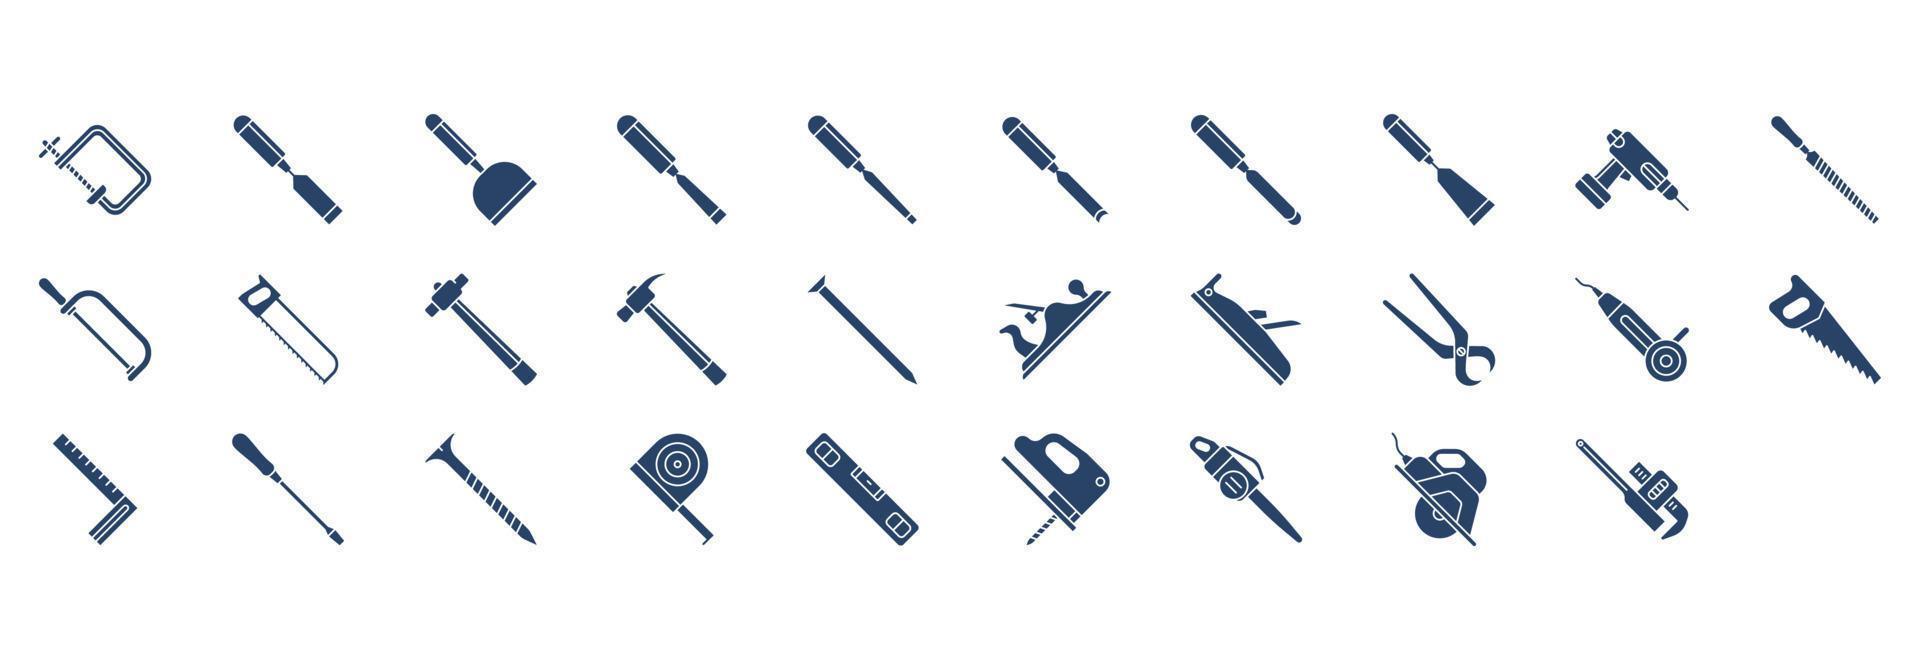 colección de íconos relacionados con herramientas de carpintería, incluidos íconos como cortadora, herramienta de corte, archivo y más. ilustraciones vectoriales, conjunto perfecto de píxeles vector